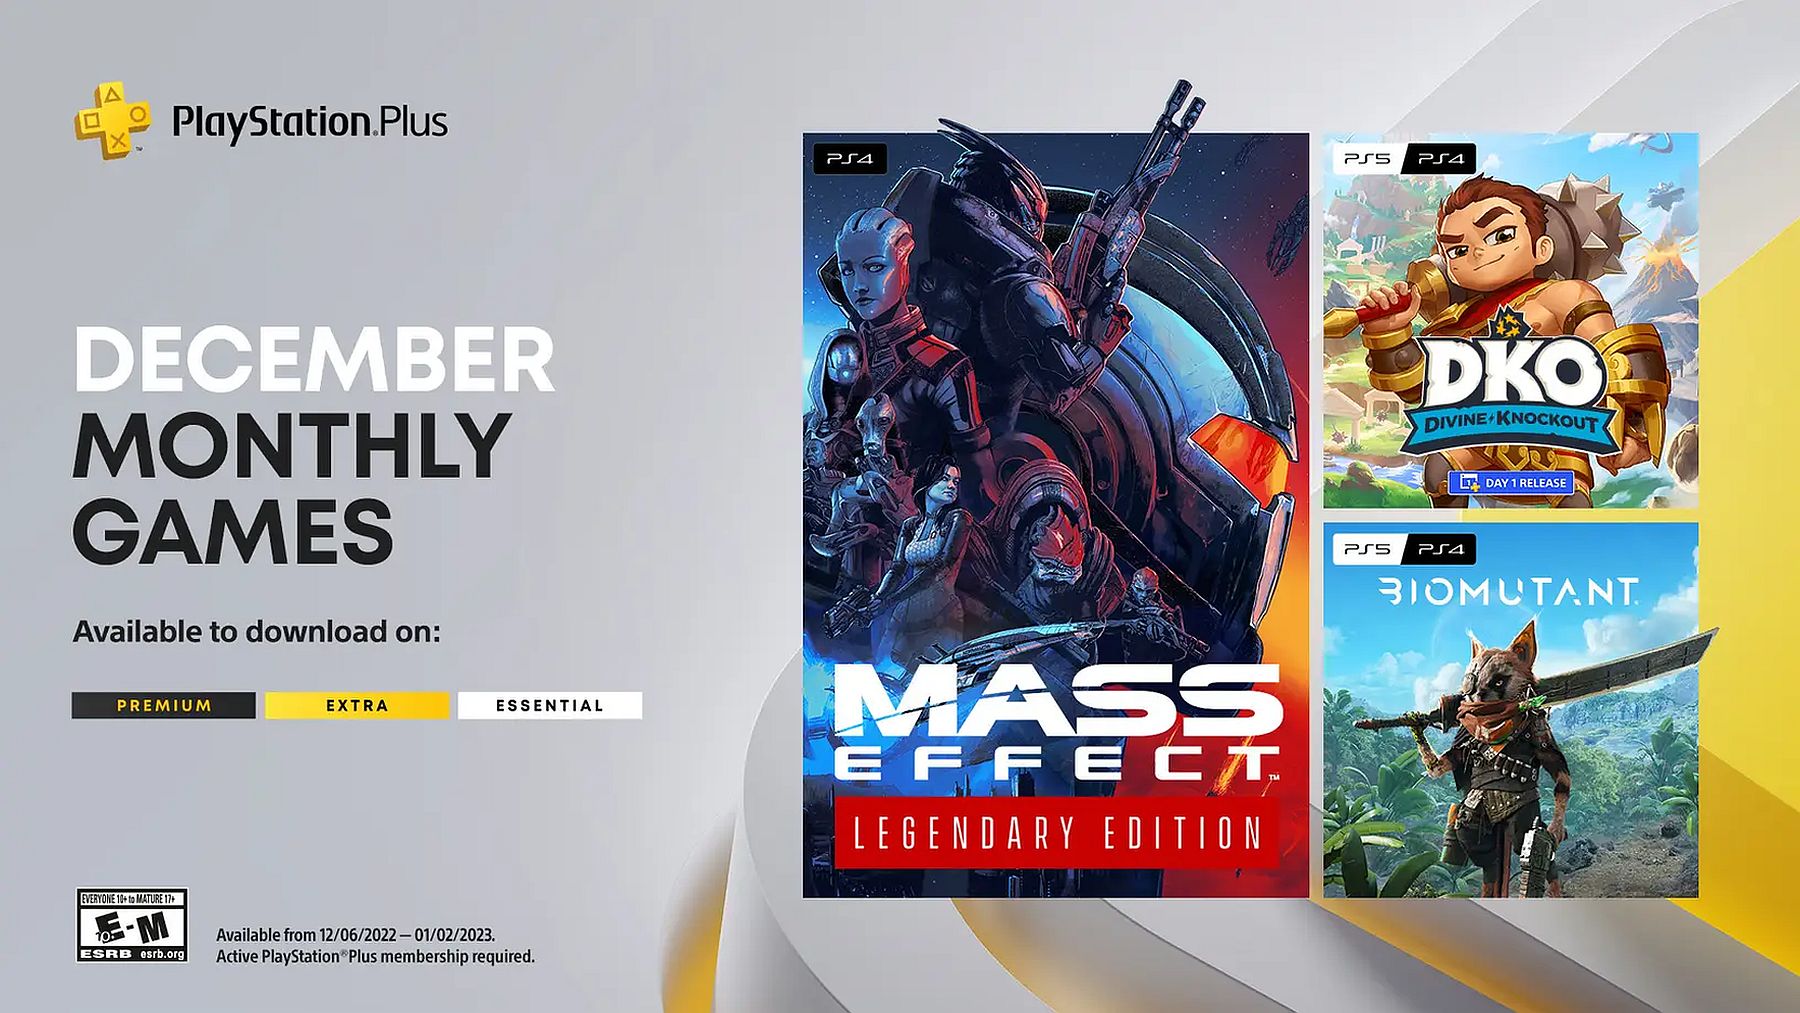 Mass Effect Legendary Edition, Biomutant dikonfirmasi sebagai game PlayStation Plus untuk bulan Desember